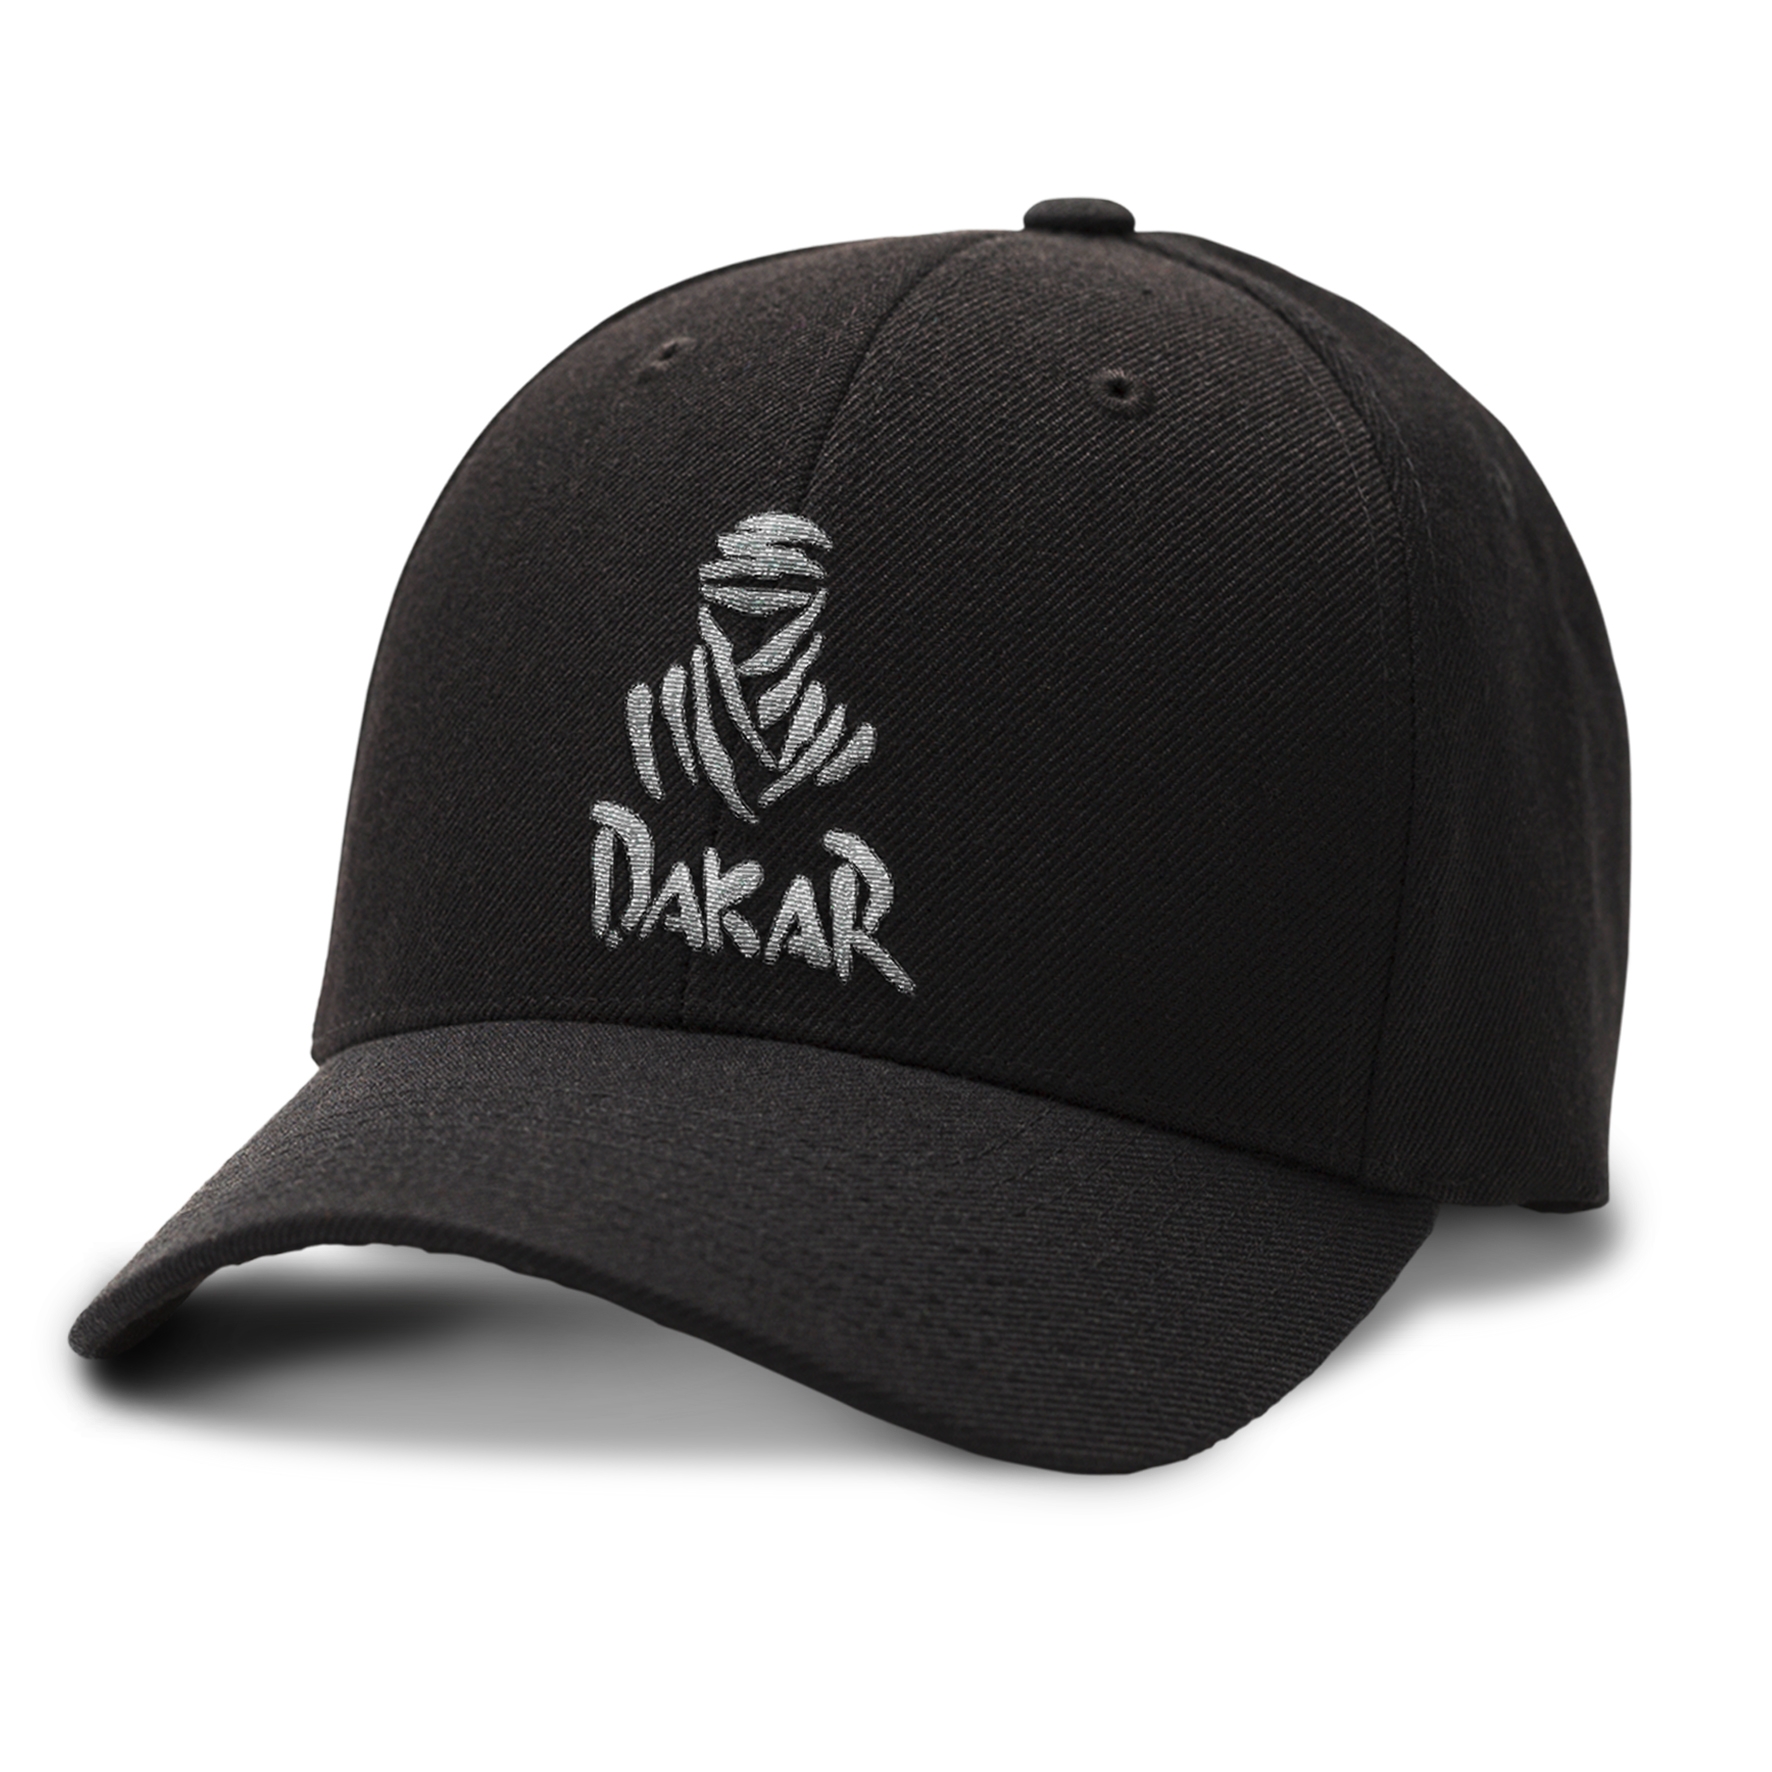 Une casquette Folhousa au Paris Dakar 2019 ! — Folhousa Original